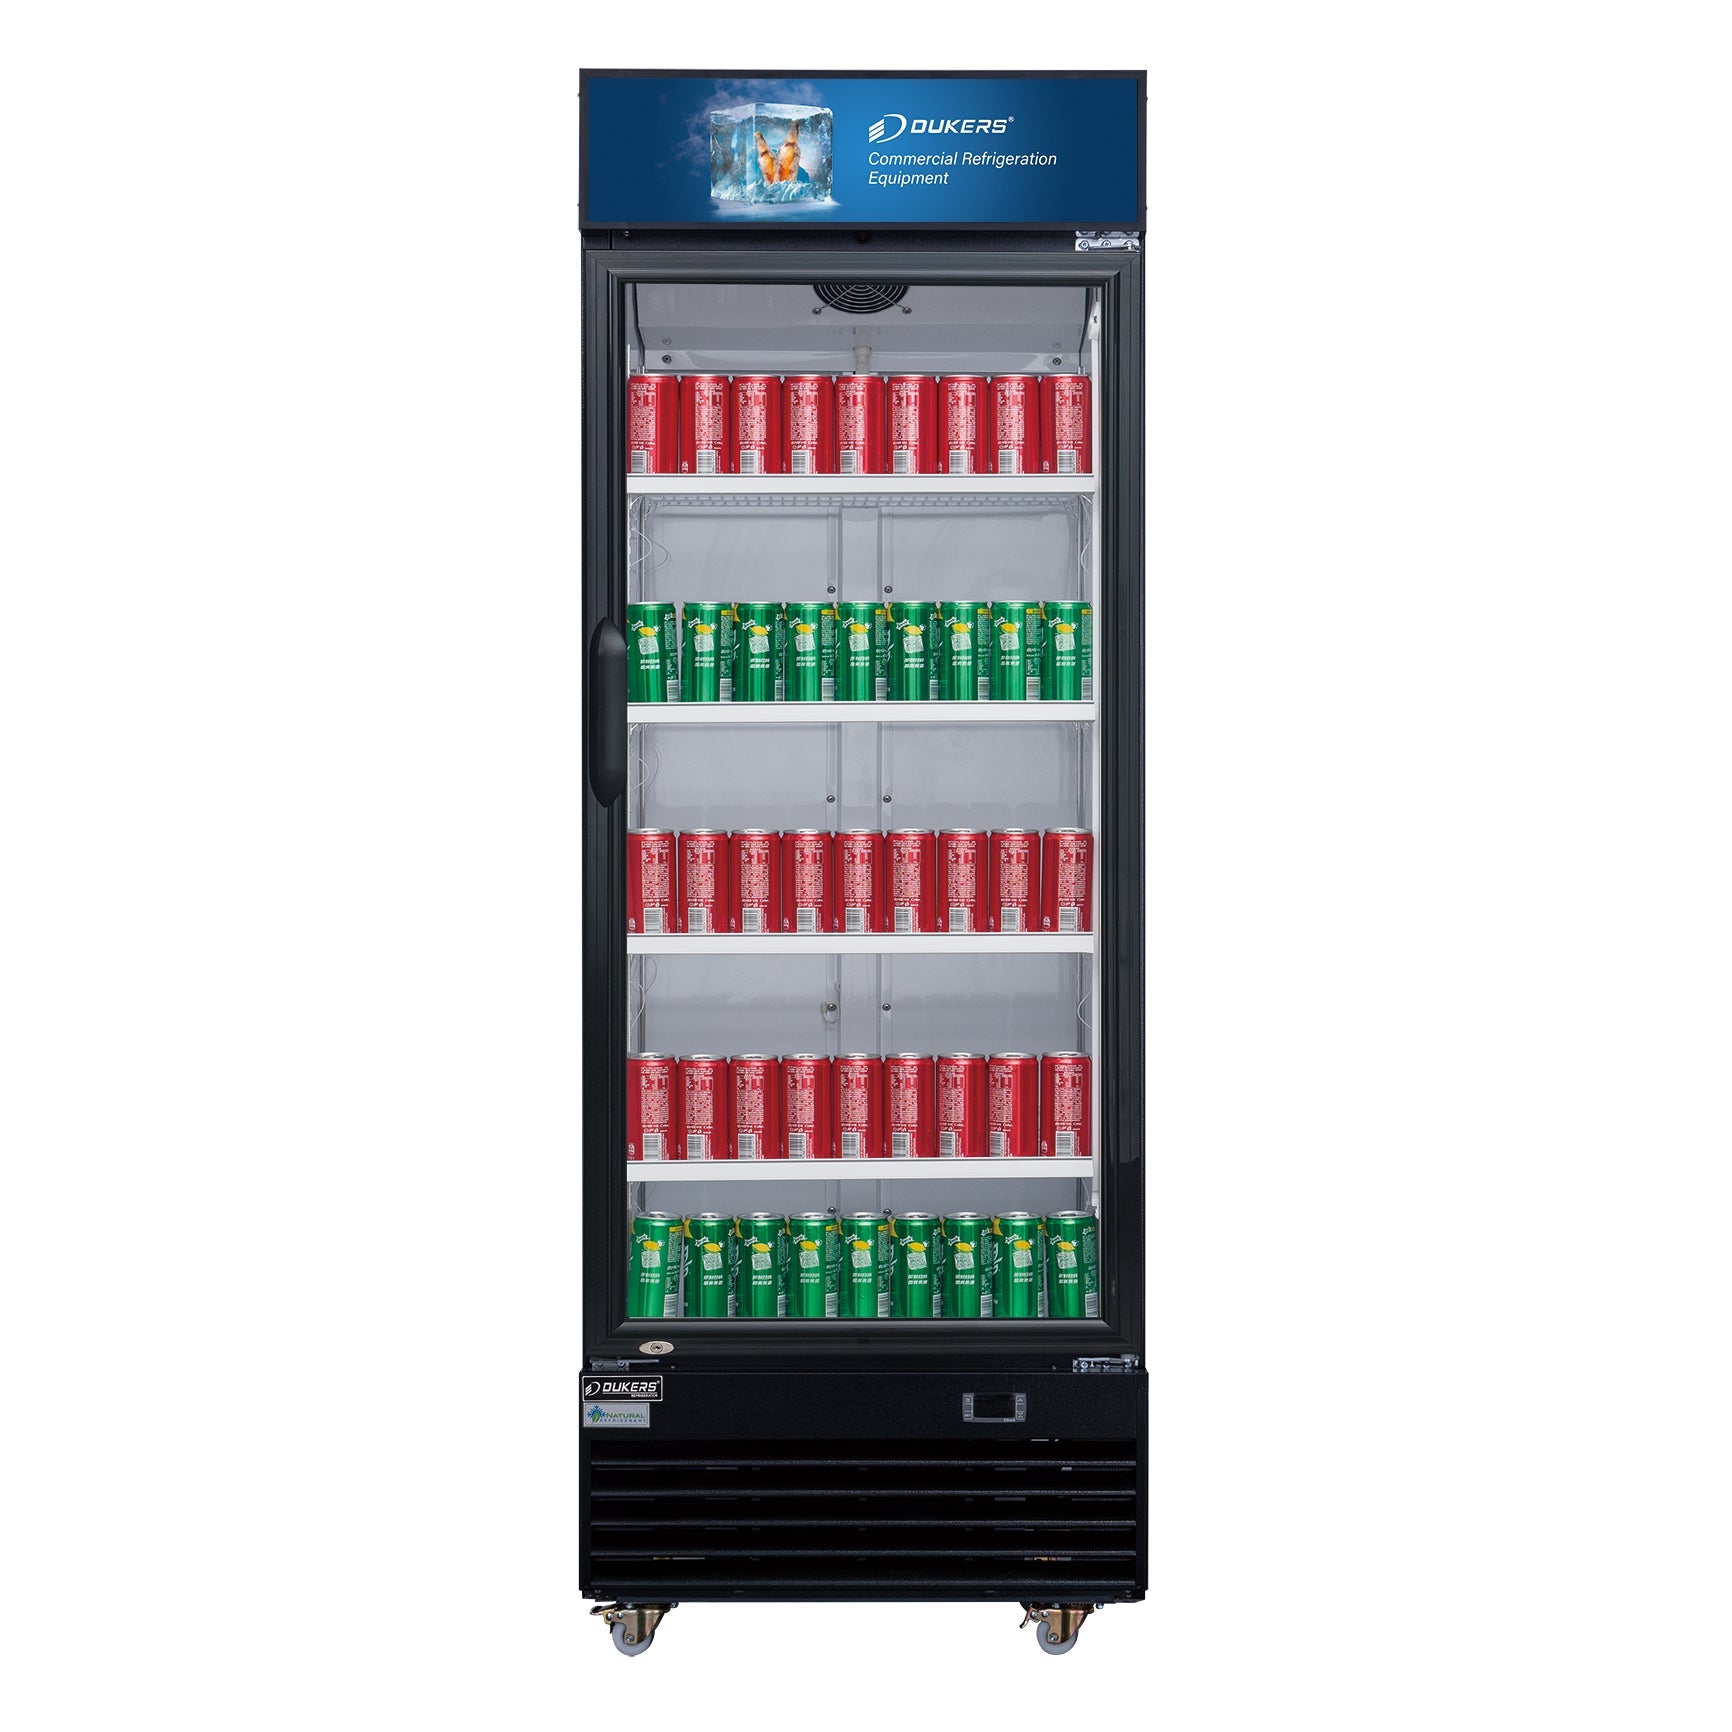 Dukers DSM-15R 14.7 cu. ft. Glass Swing Door Merchandiser Refrigerator